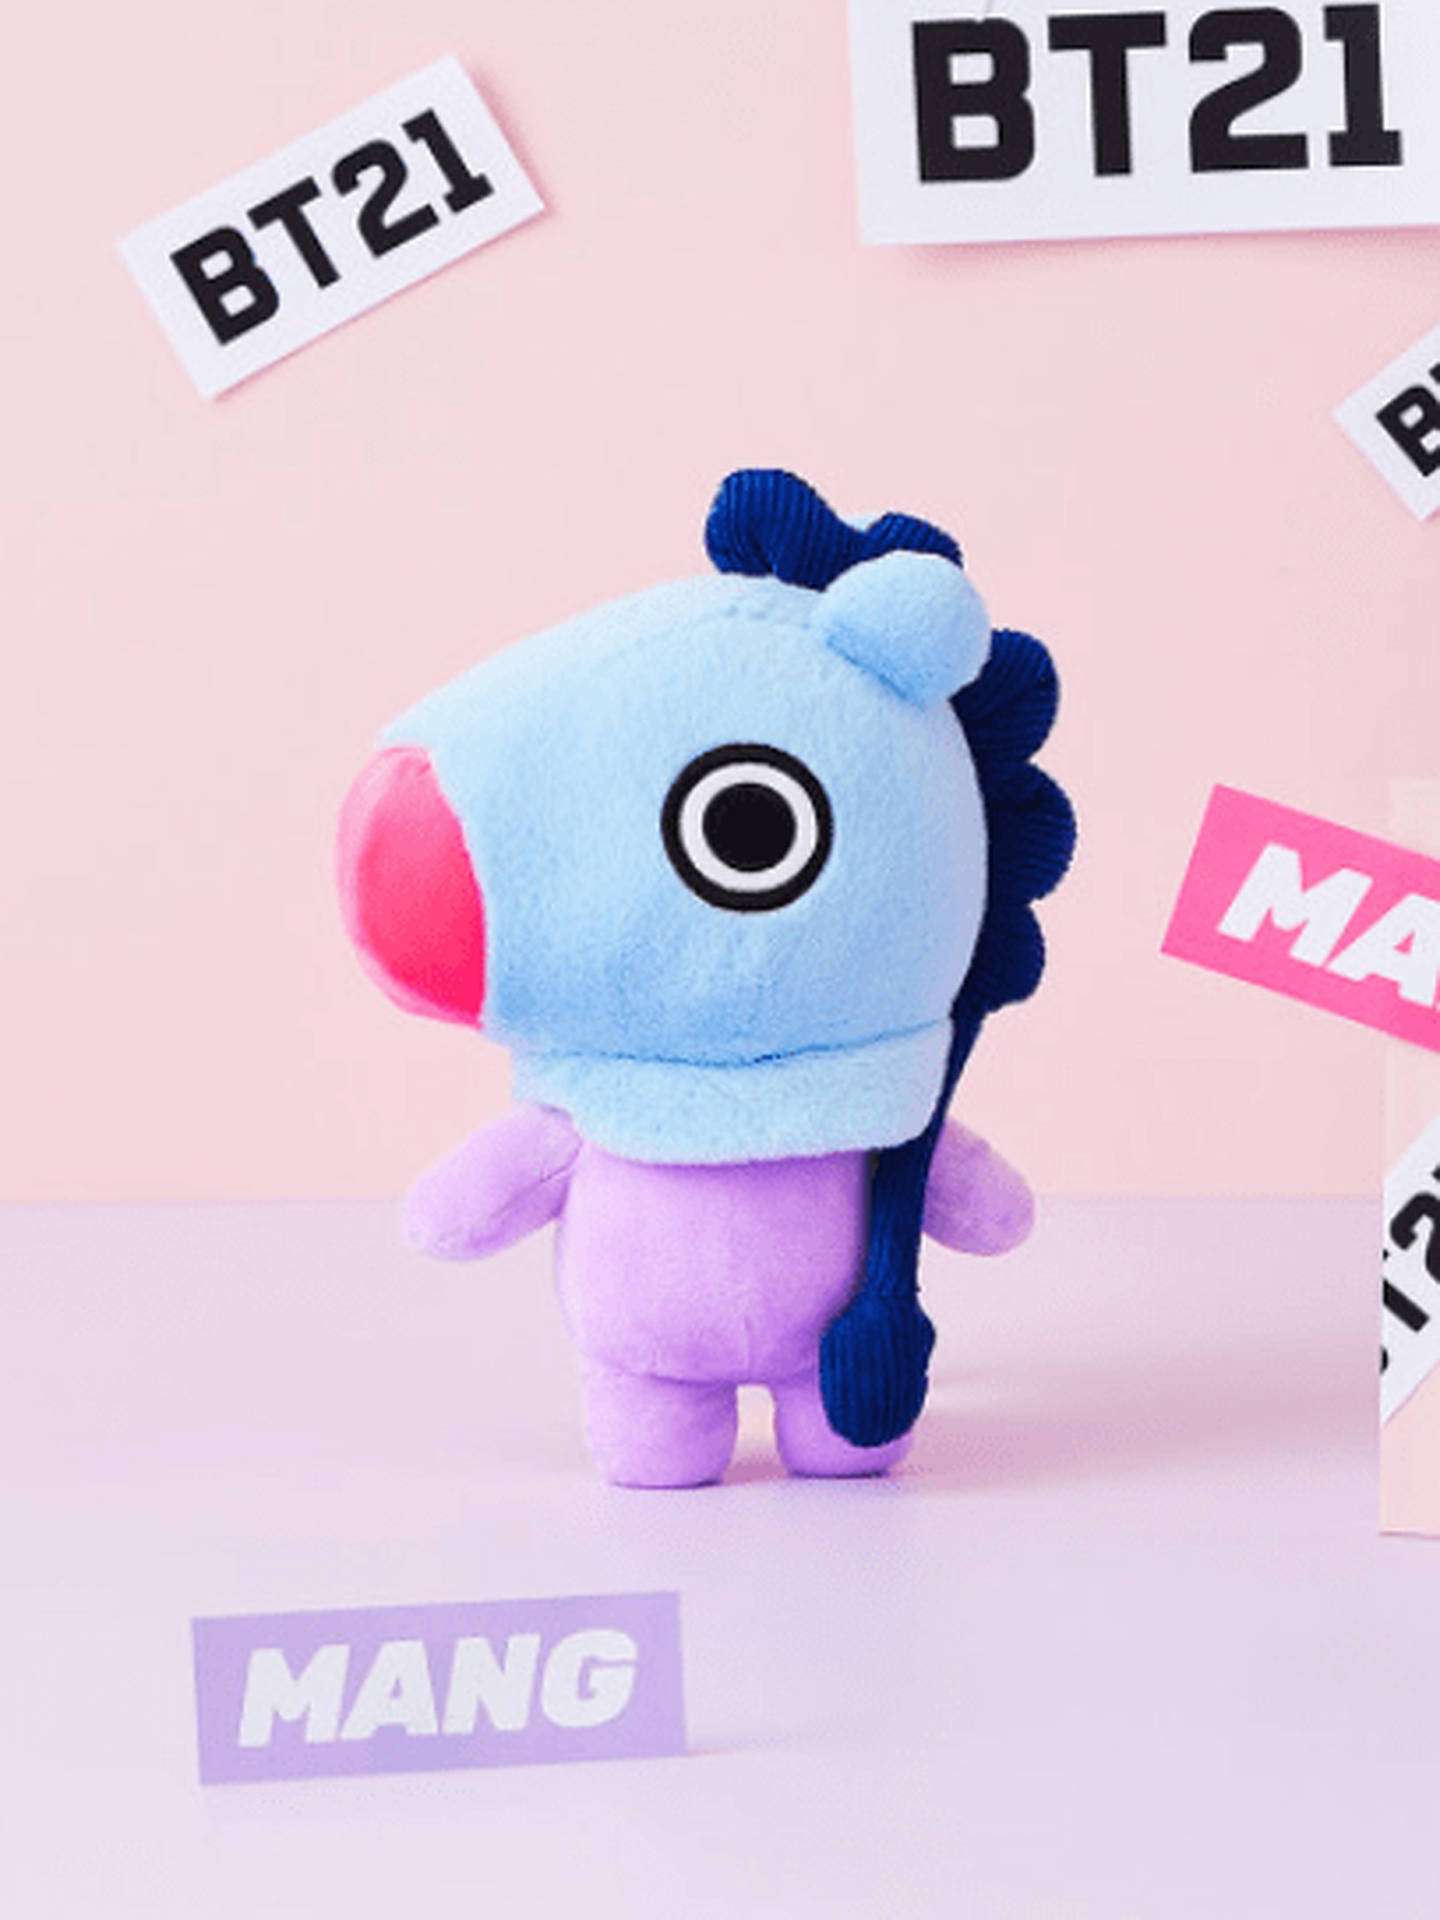 Mang Bt21 Stuffed Toy Wallpaper